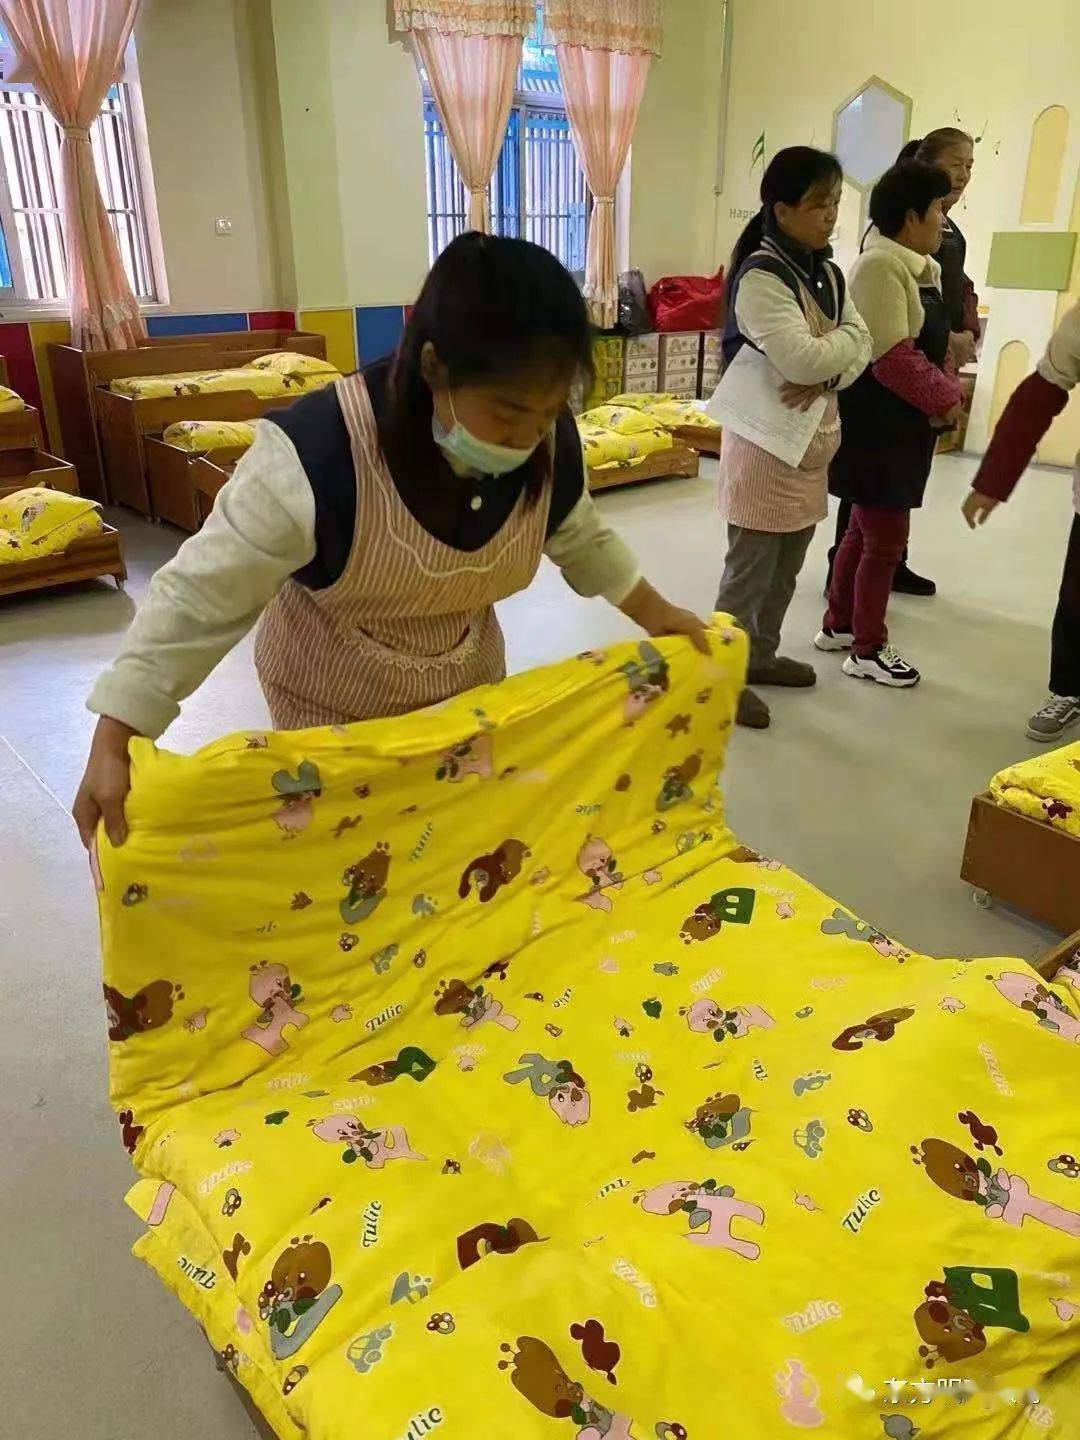 【展技能,亮风采】——京都东方幼儿园保育员叠被子技能赛